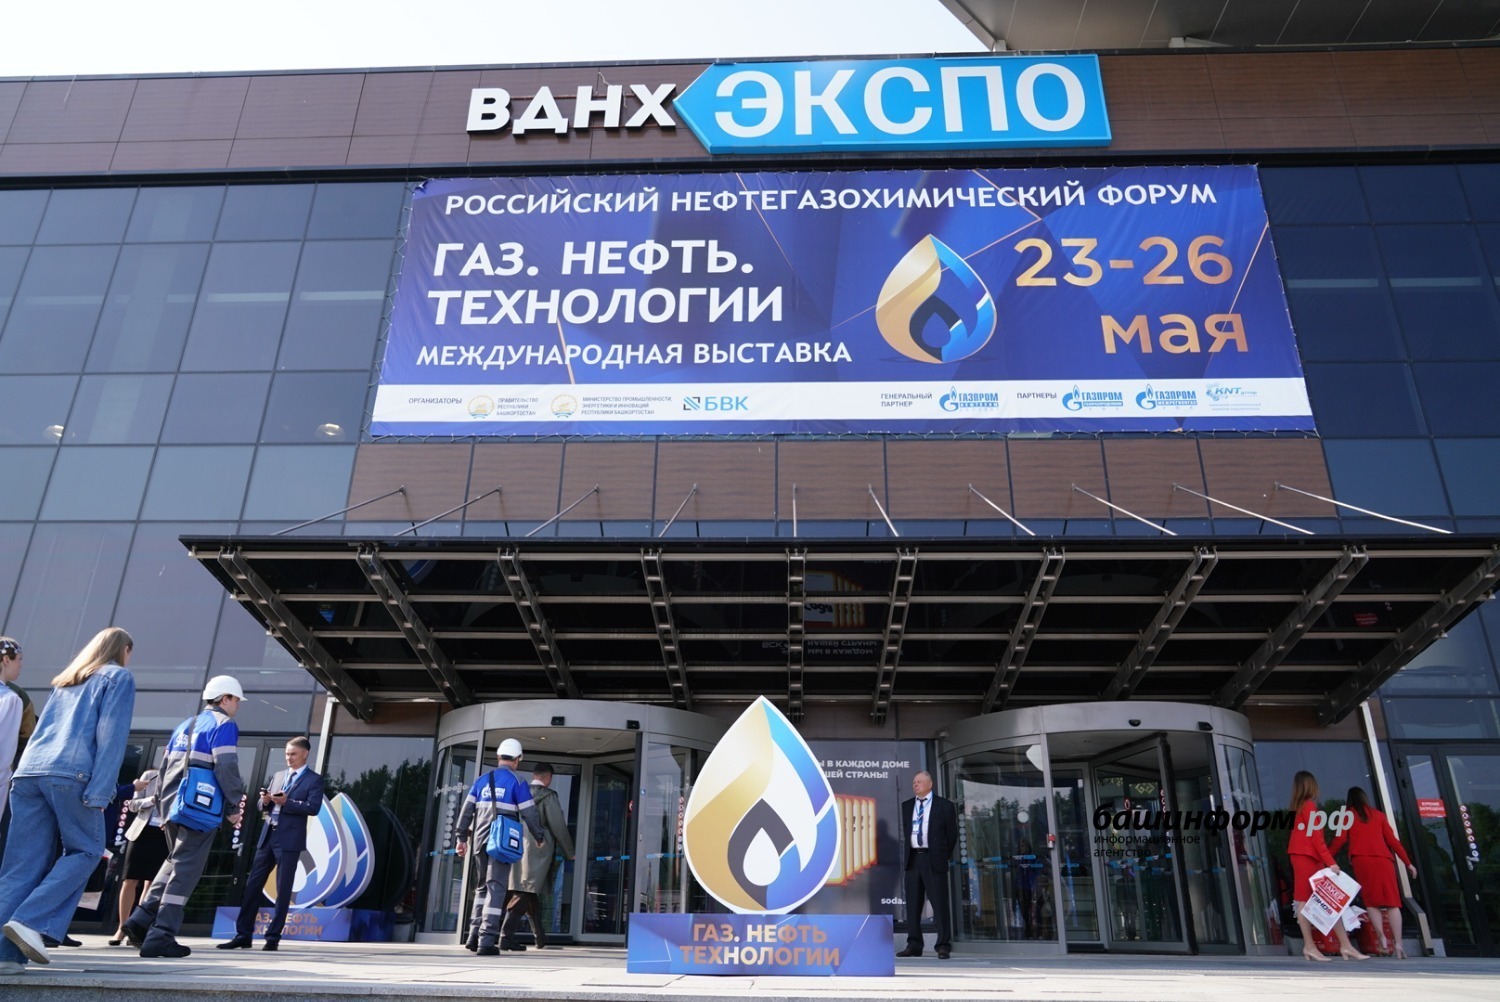 В Башкирии проходит масштабный нефтегазохимический форум и развёрнута специализированная выставка